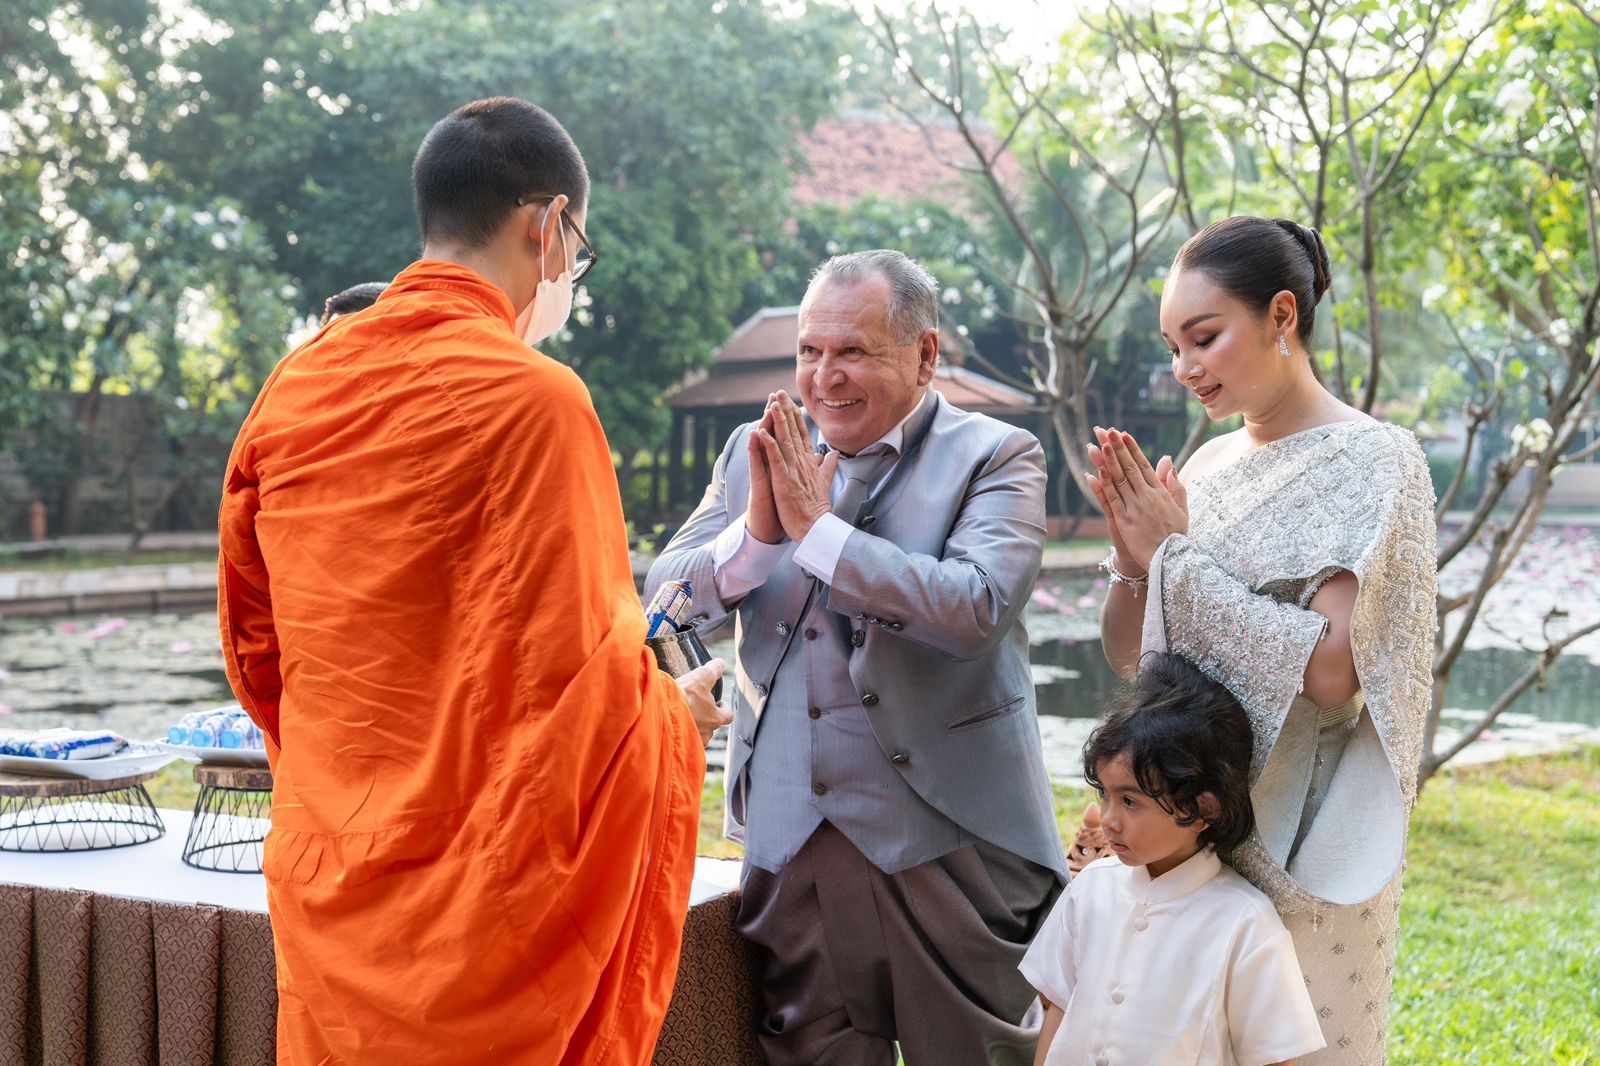 Benção do monge budista